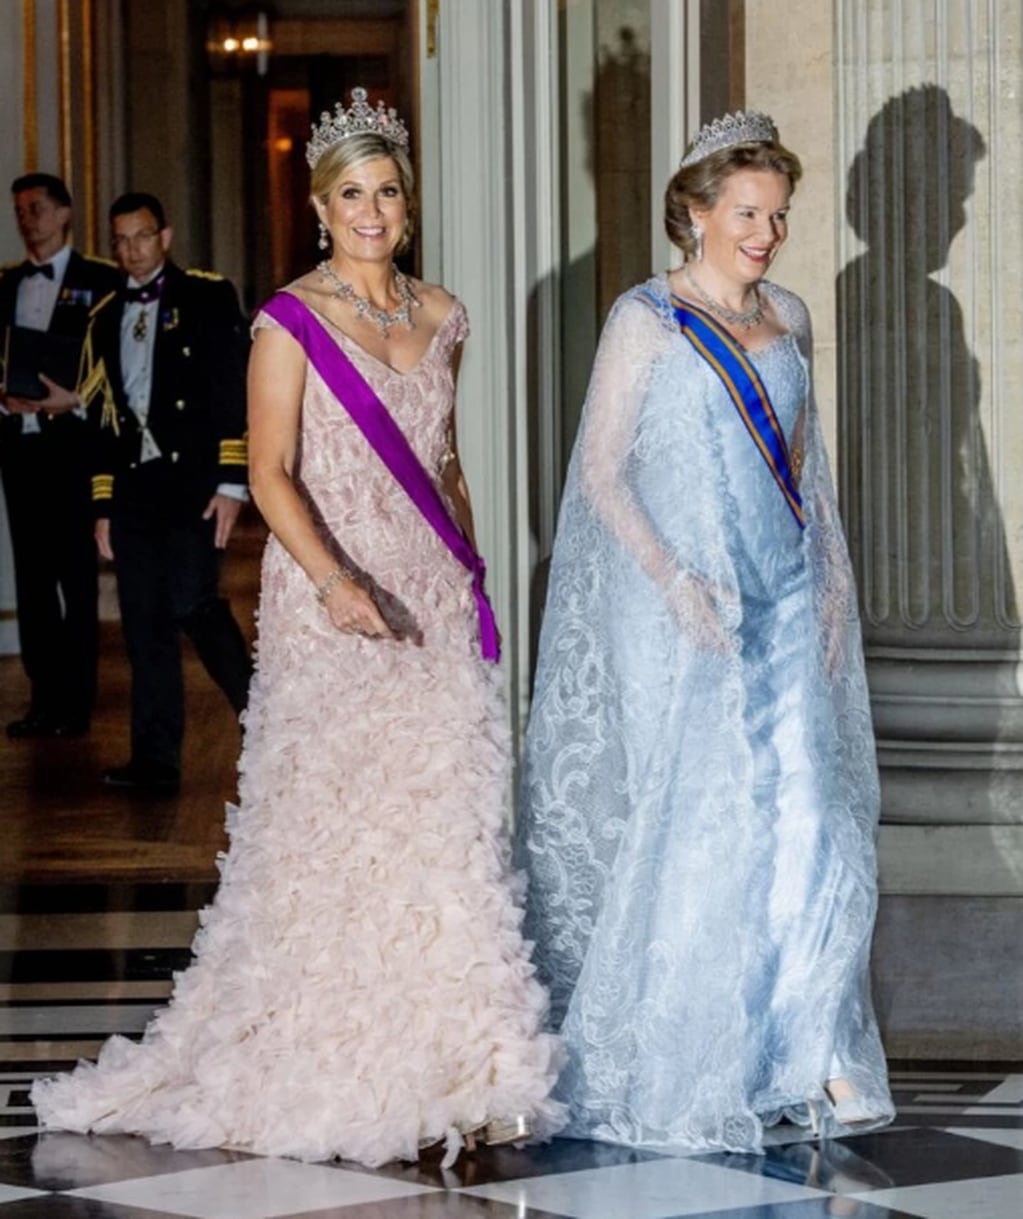 La Reina de Países Bajos se encuentra en Bélgica por una visita de Estado e impresionó con el glamuroso vestido que lució en su paso por dicho país.